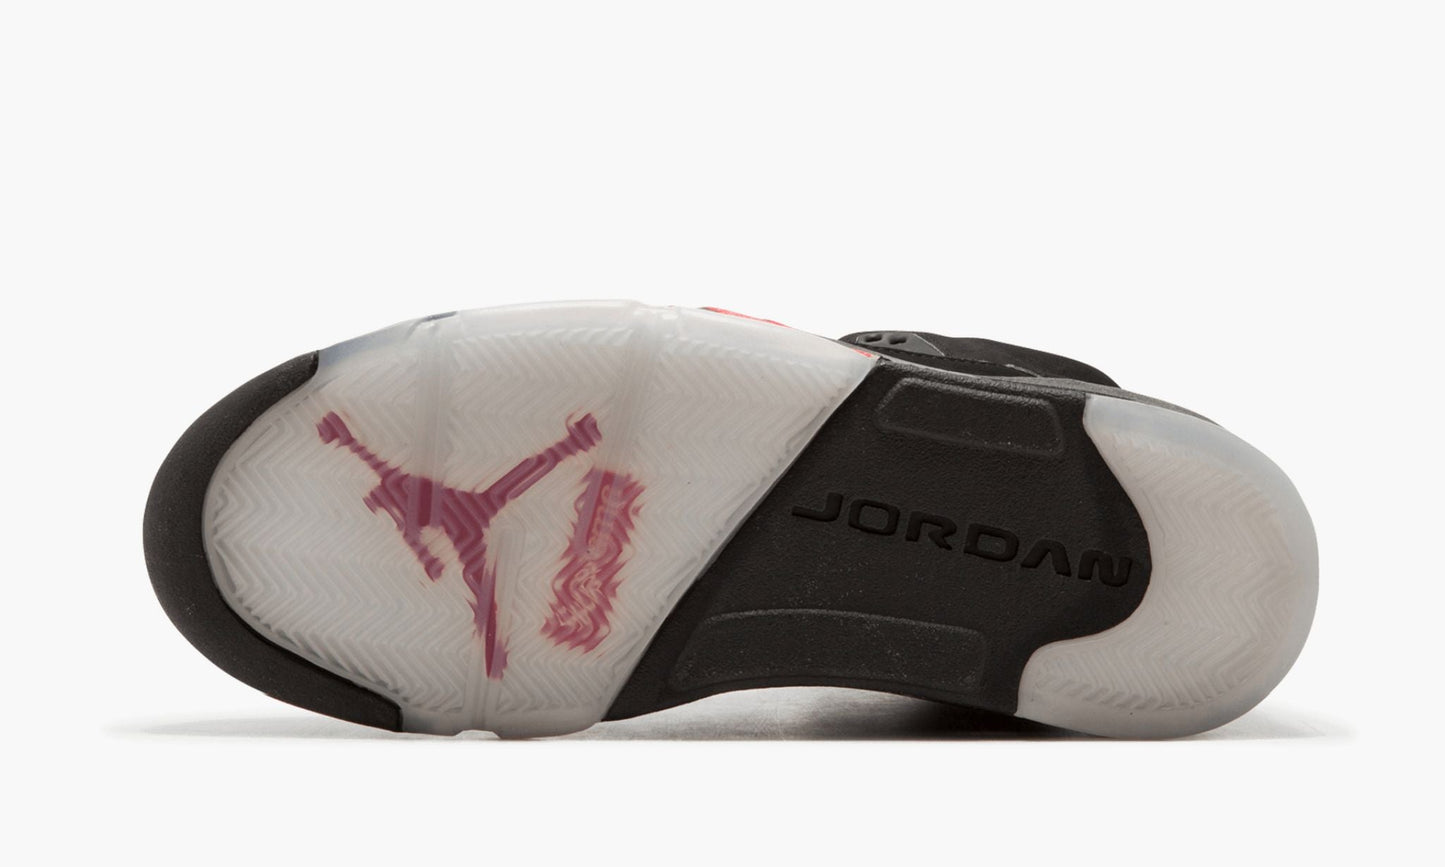 Air Jordan 5 Retro Supreme "Supreme"